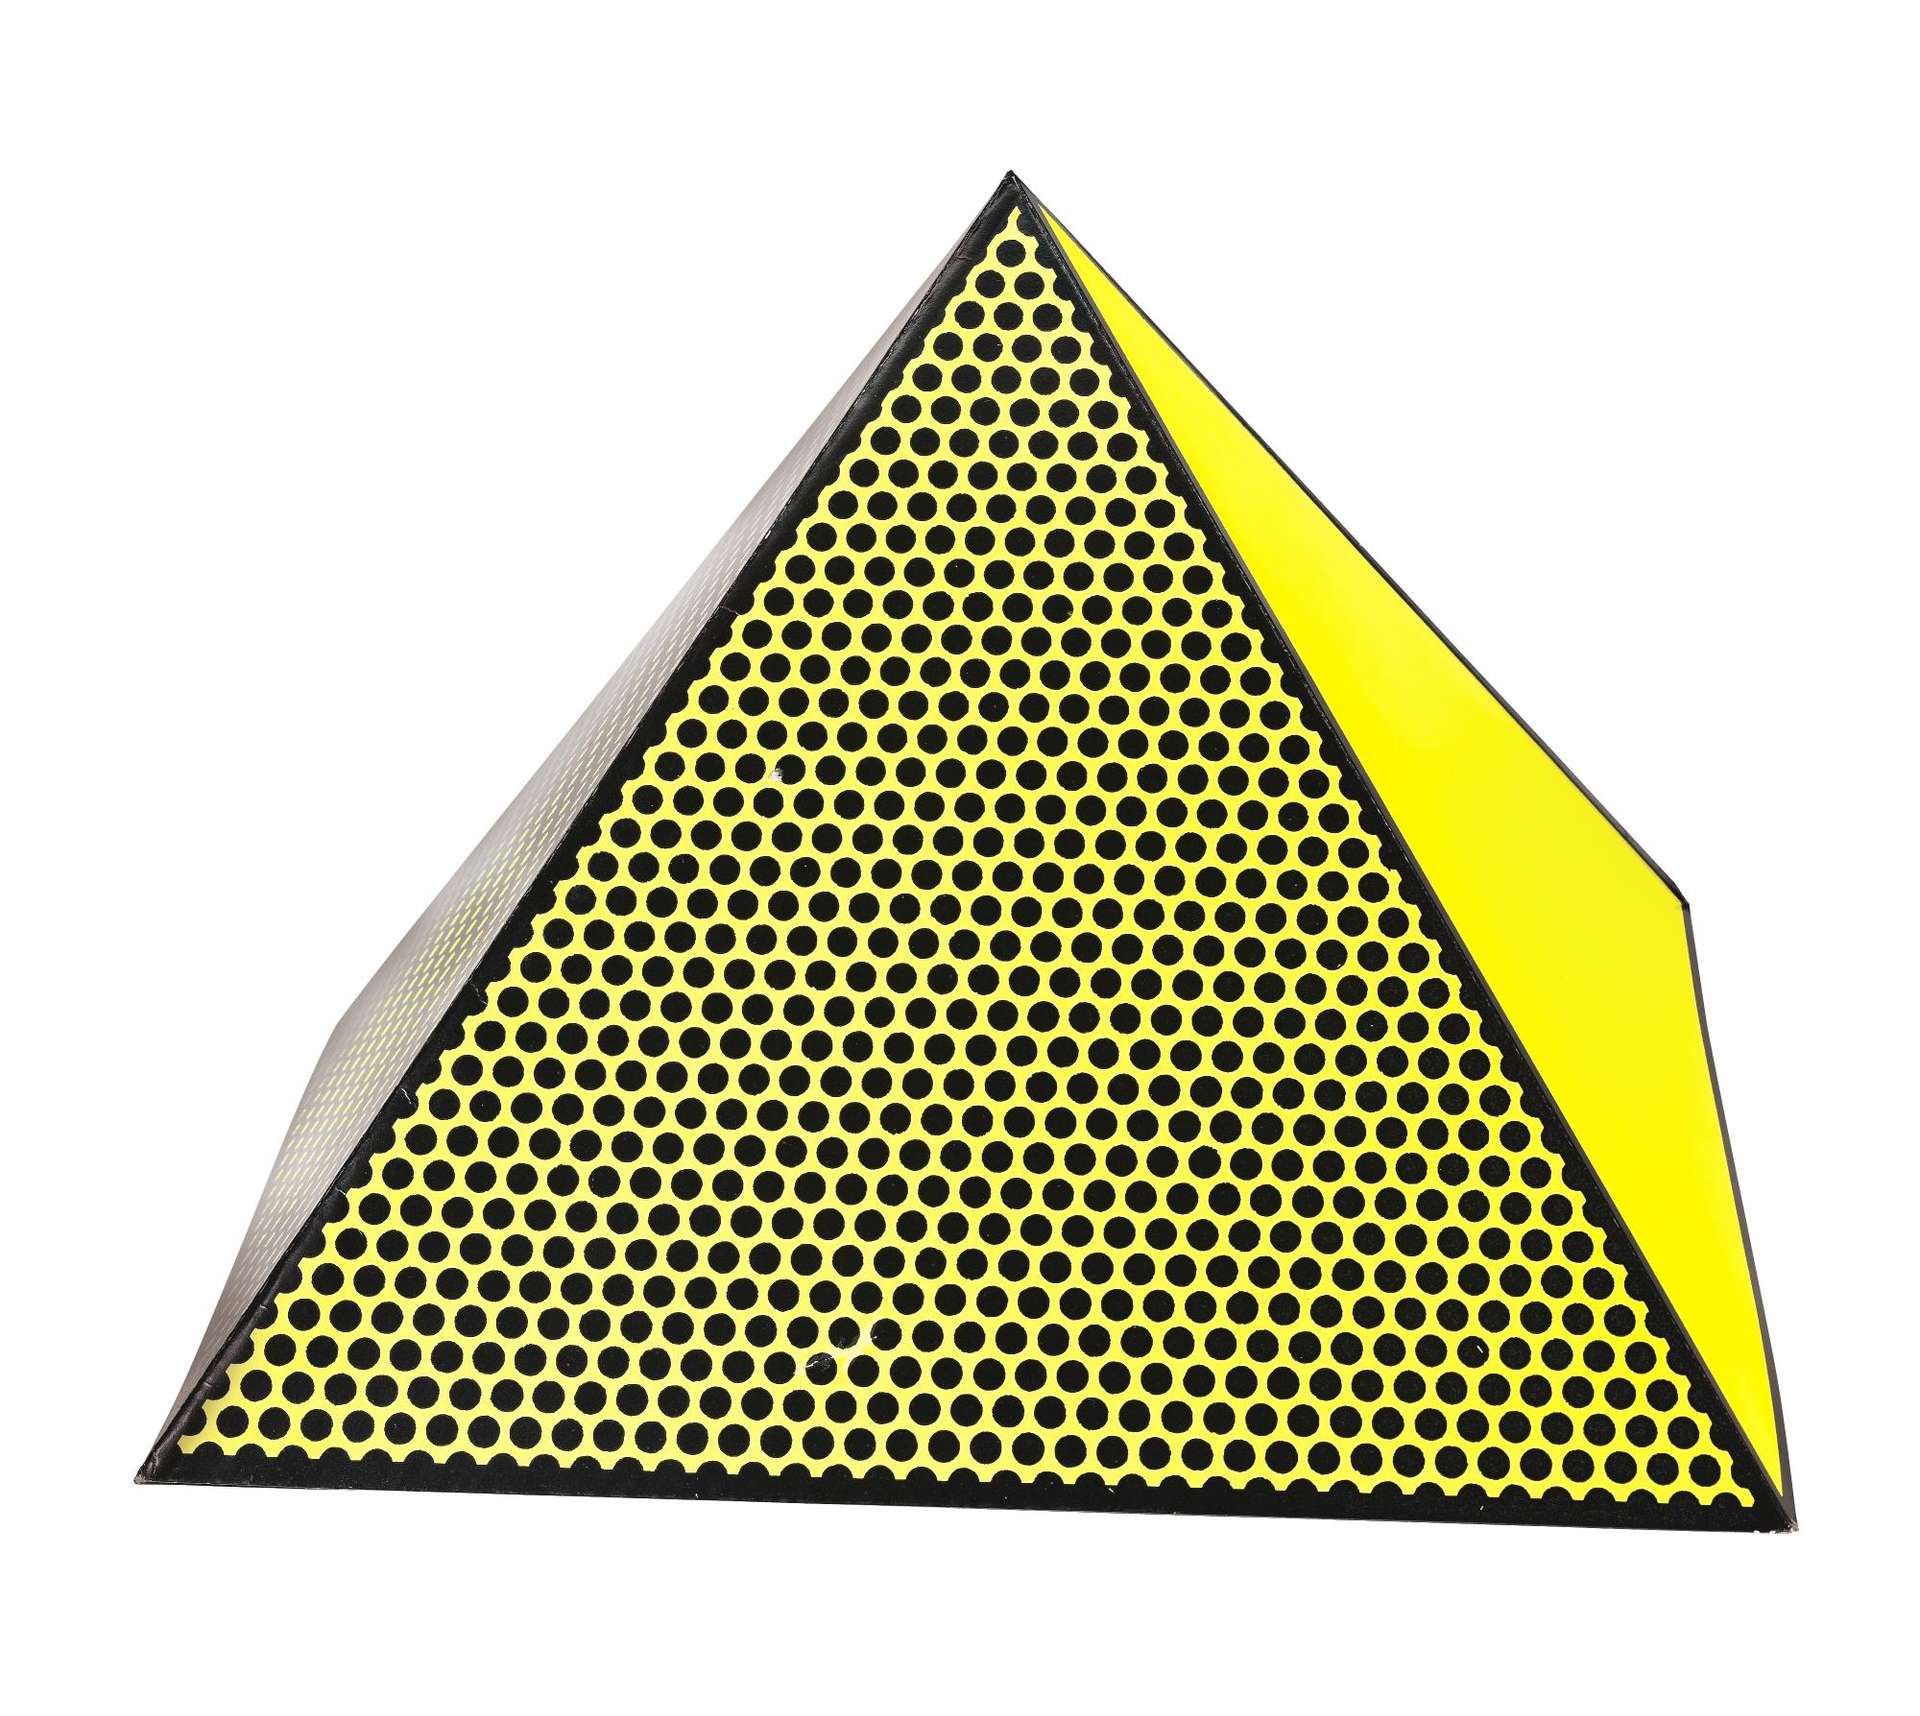 Pyramid by Roy Lichtenstein - MyArtBroker